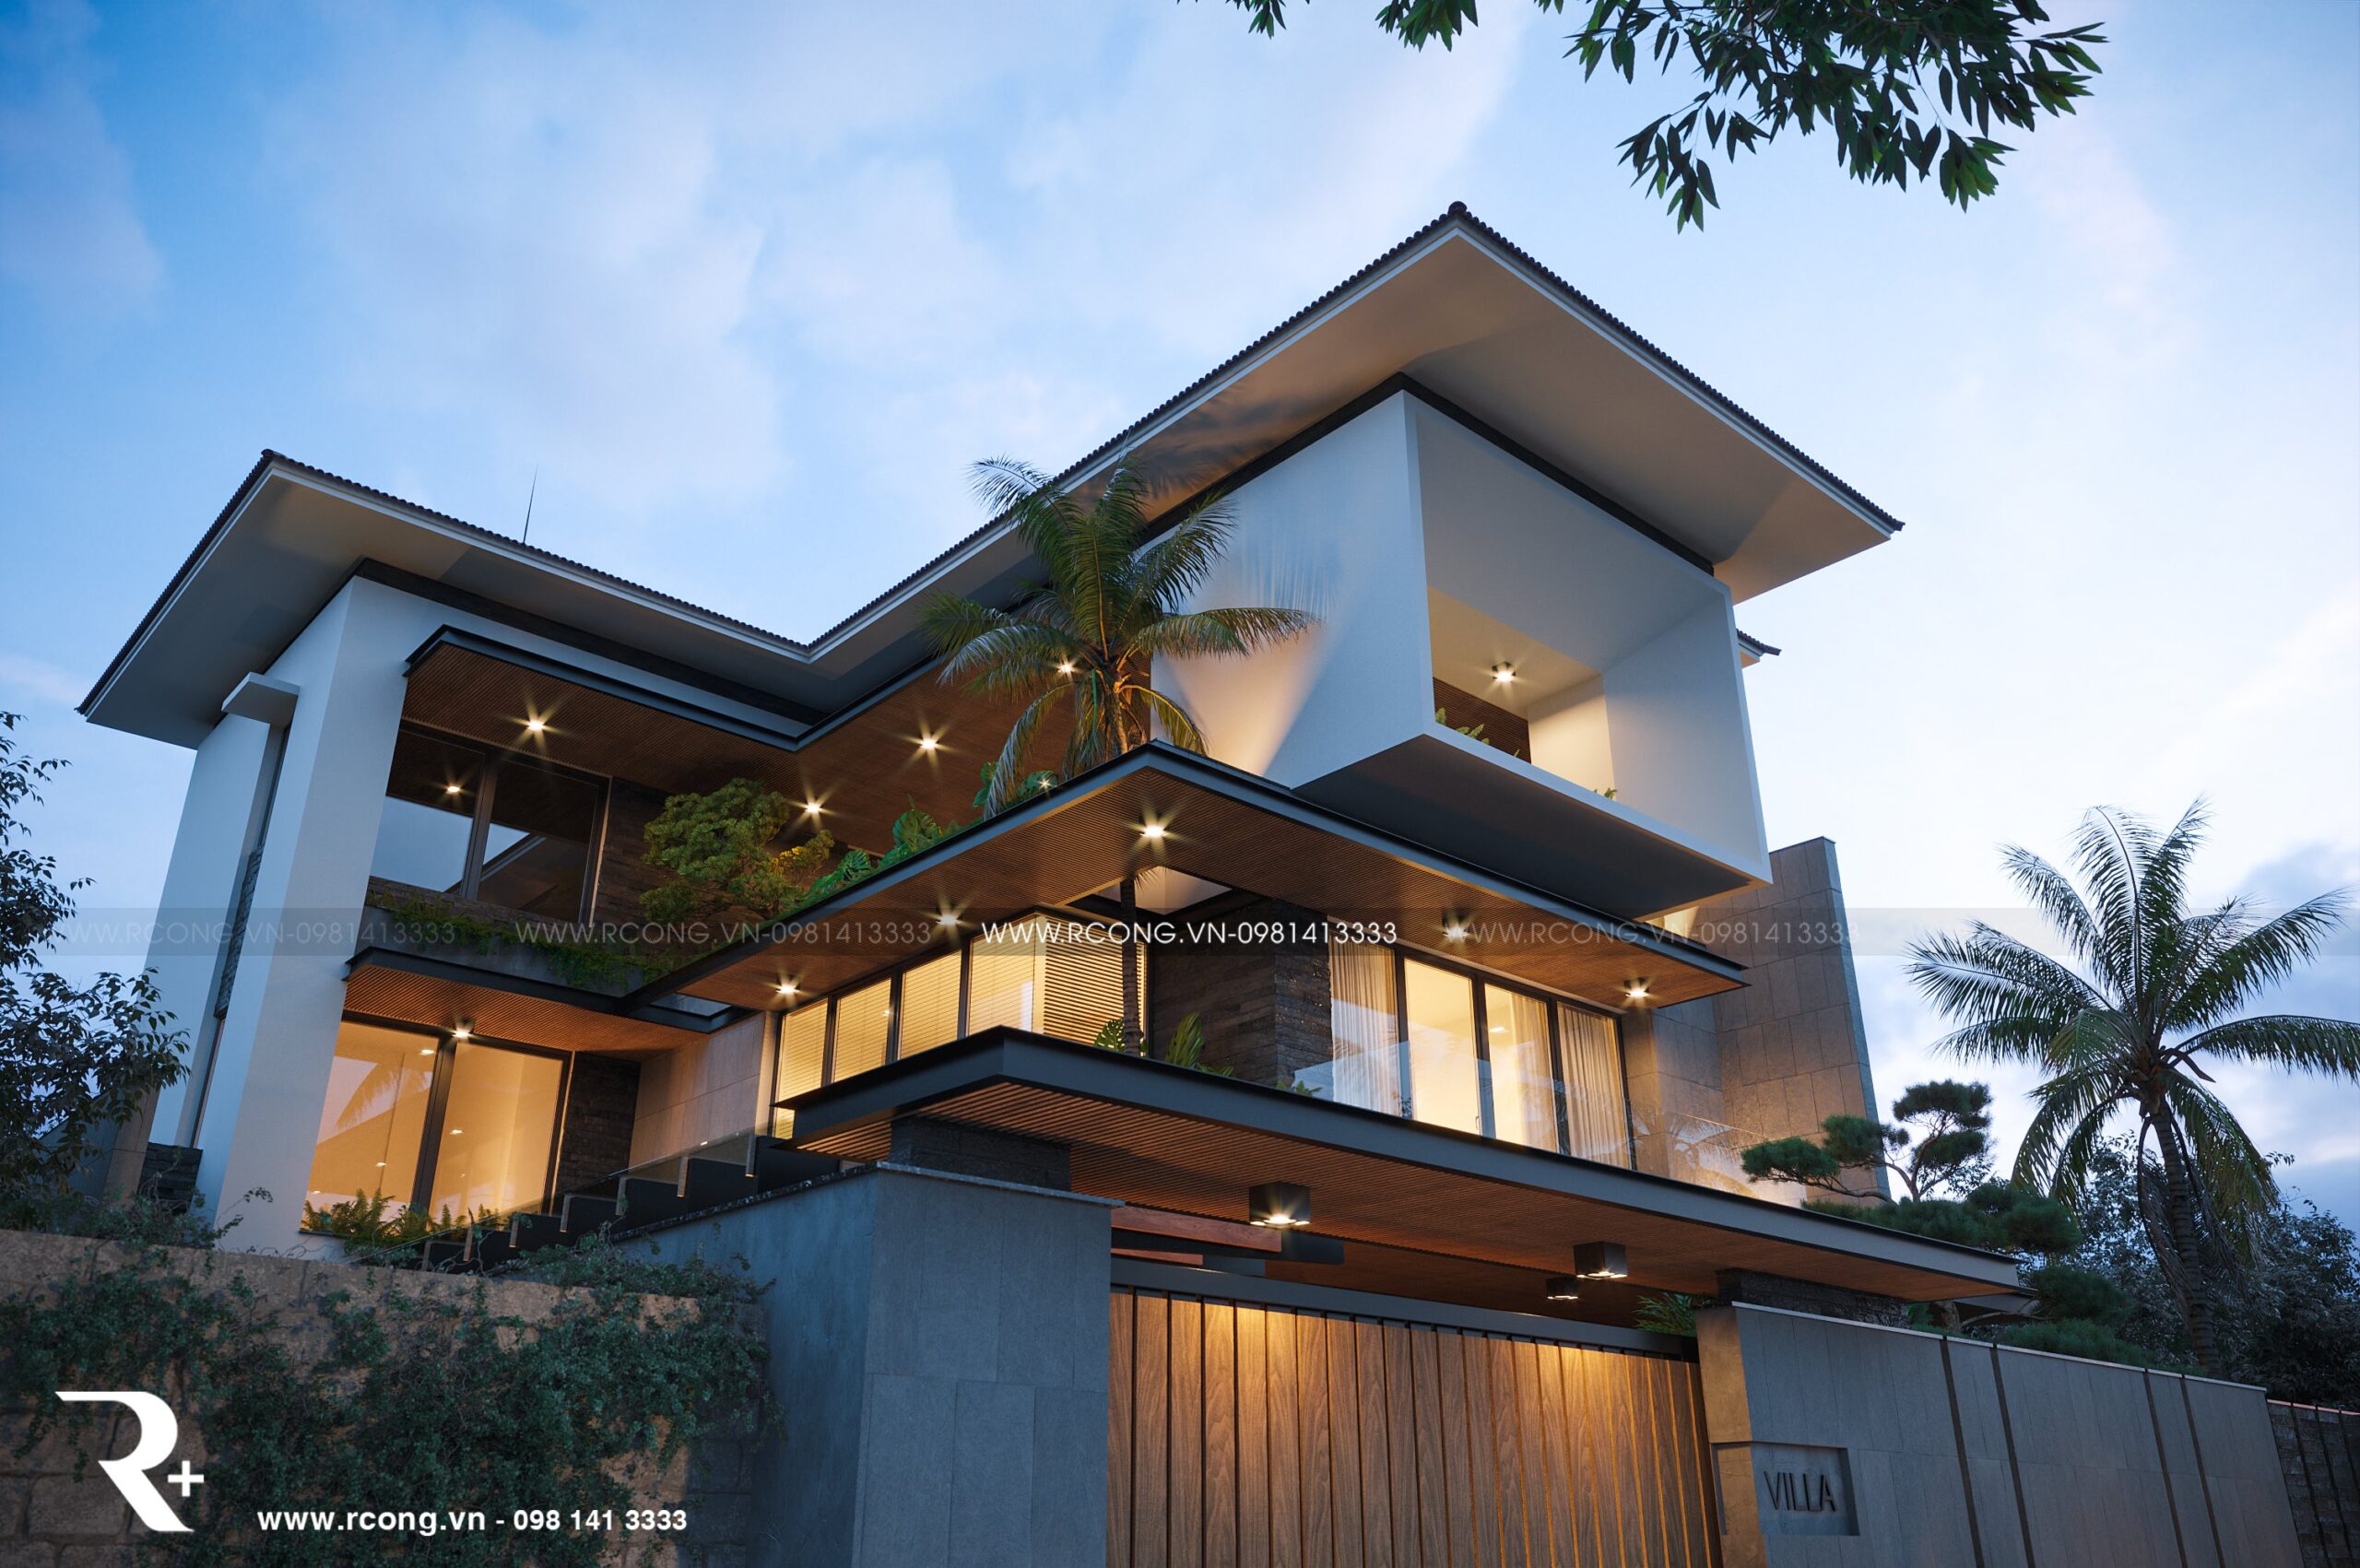 Giới thiệu mẫu thiết kế nhà kính hiện đại 2 tầng mái thái gần gũi với thiên  nhiên BT221089  Kiến trúc Angcovat